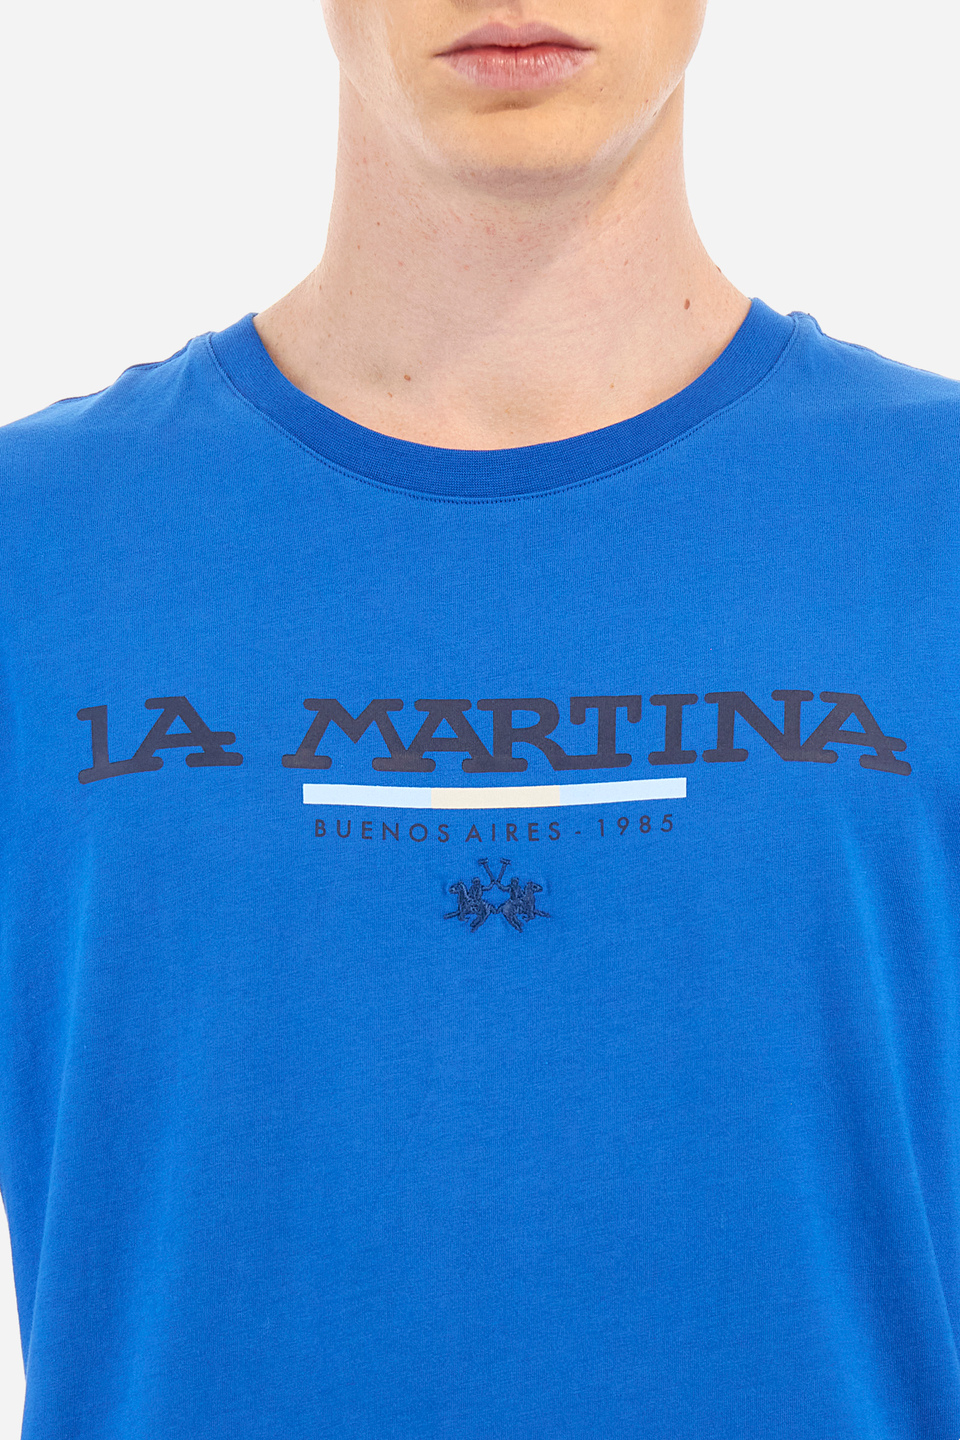 Herren -T -Shirt regular fit - Winford | La Martina - Official Online Shop